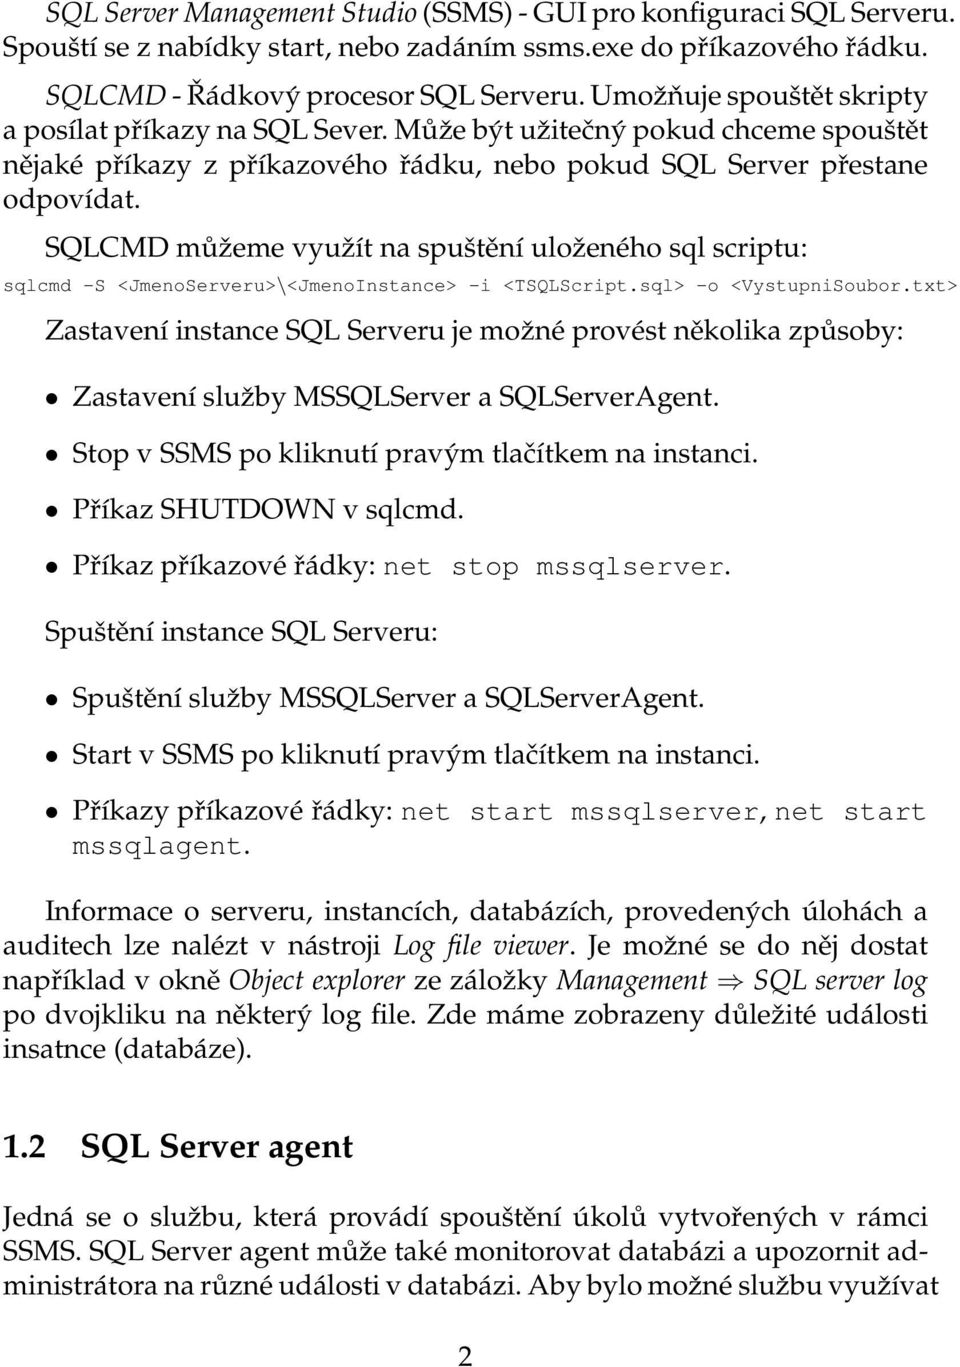 SQLCMD můˇzeme vyuˇzít na spuštění uloˇzeného sql scriptu: sqlcmd -S <JmenoServeru>\<JmenoInstance> -i <TSQLScript.sql> -o <VystupniSoubor.